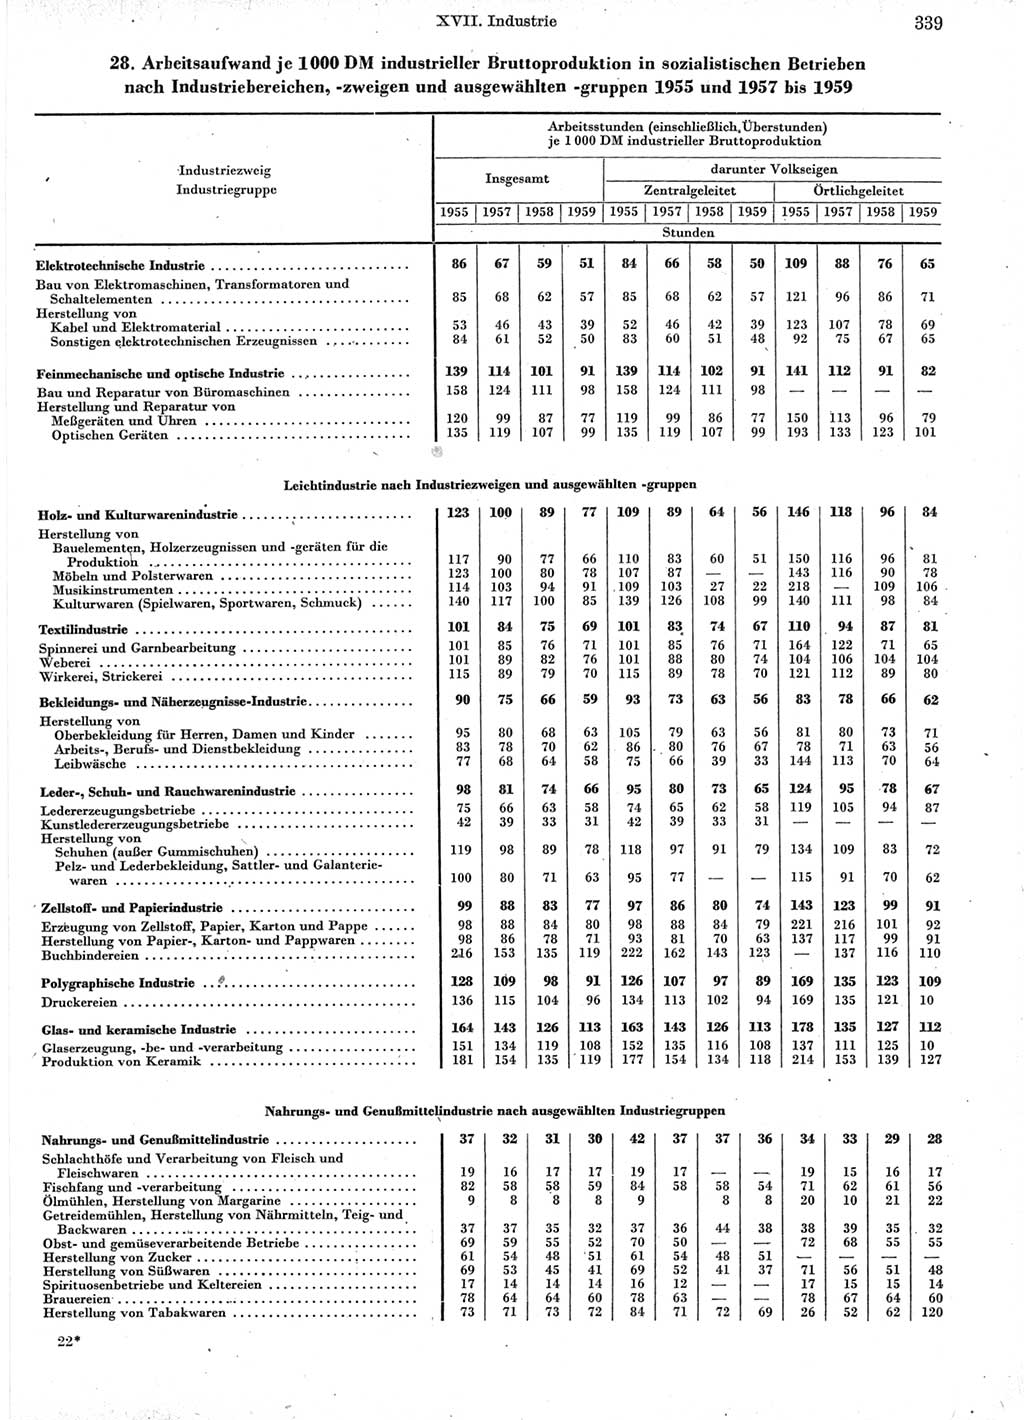 Statistisches Jahrbuch der Deutschen Demokratischen Republik (DDR) 1960-1961, Seite 339 (Stat. Jb. DDR 1960-1961, S. 339)